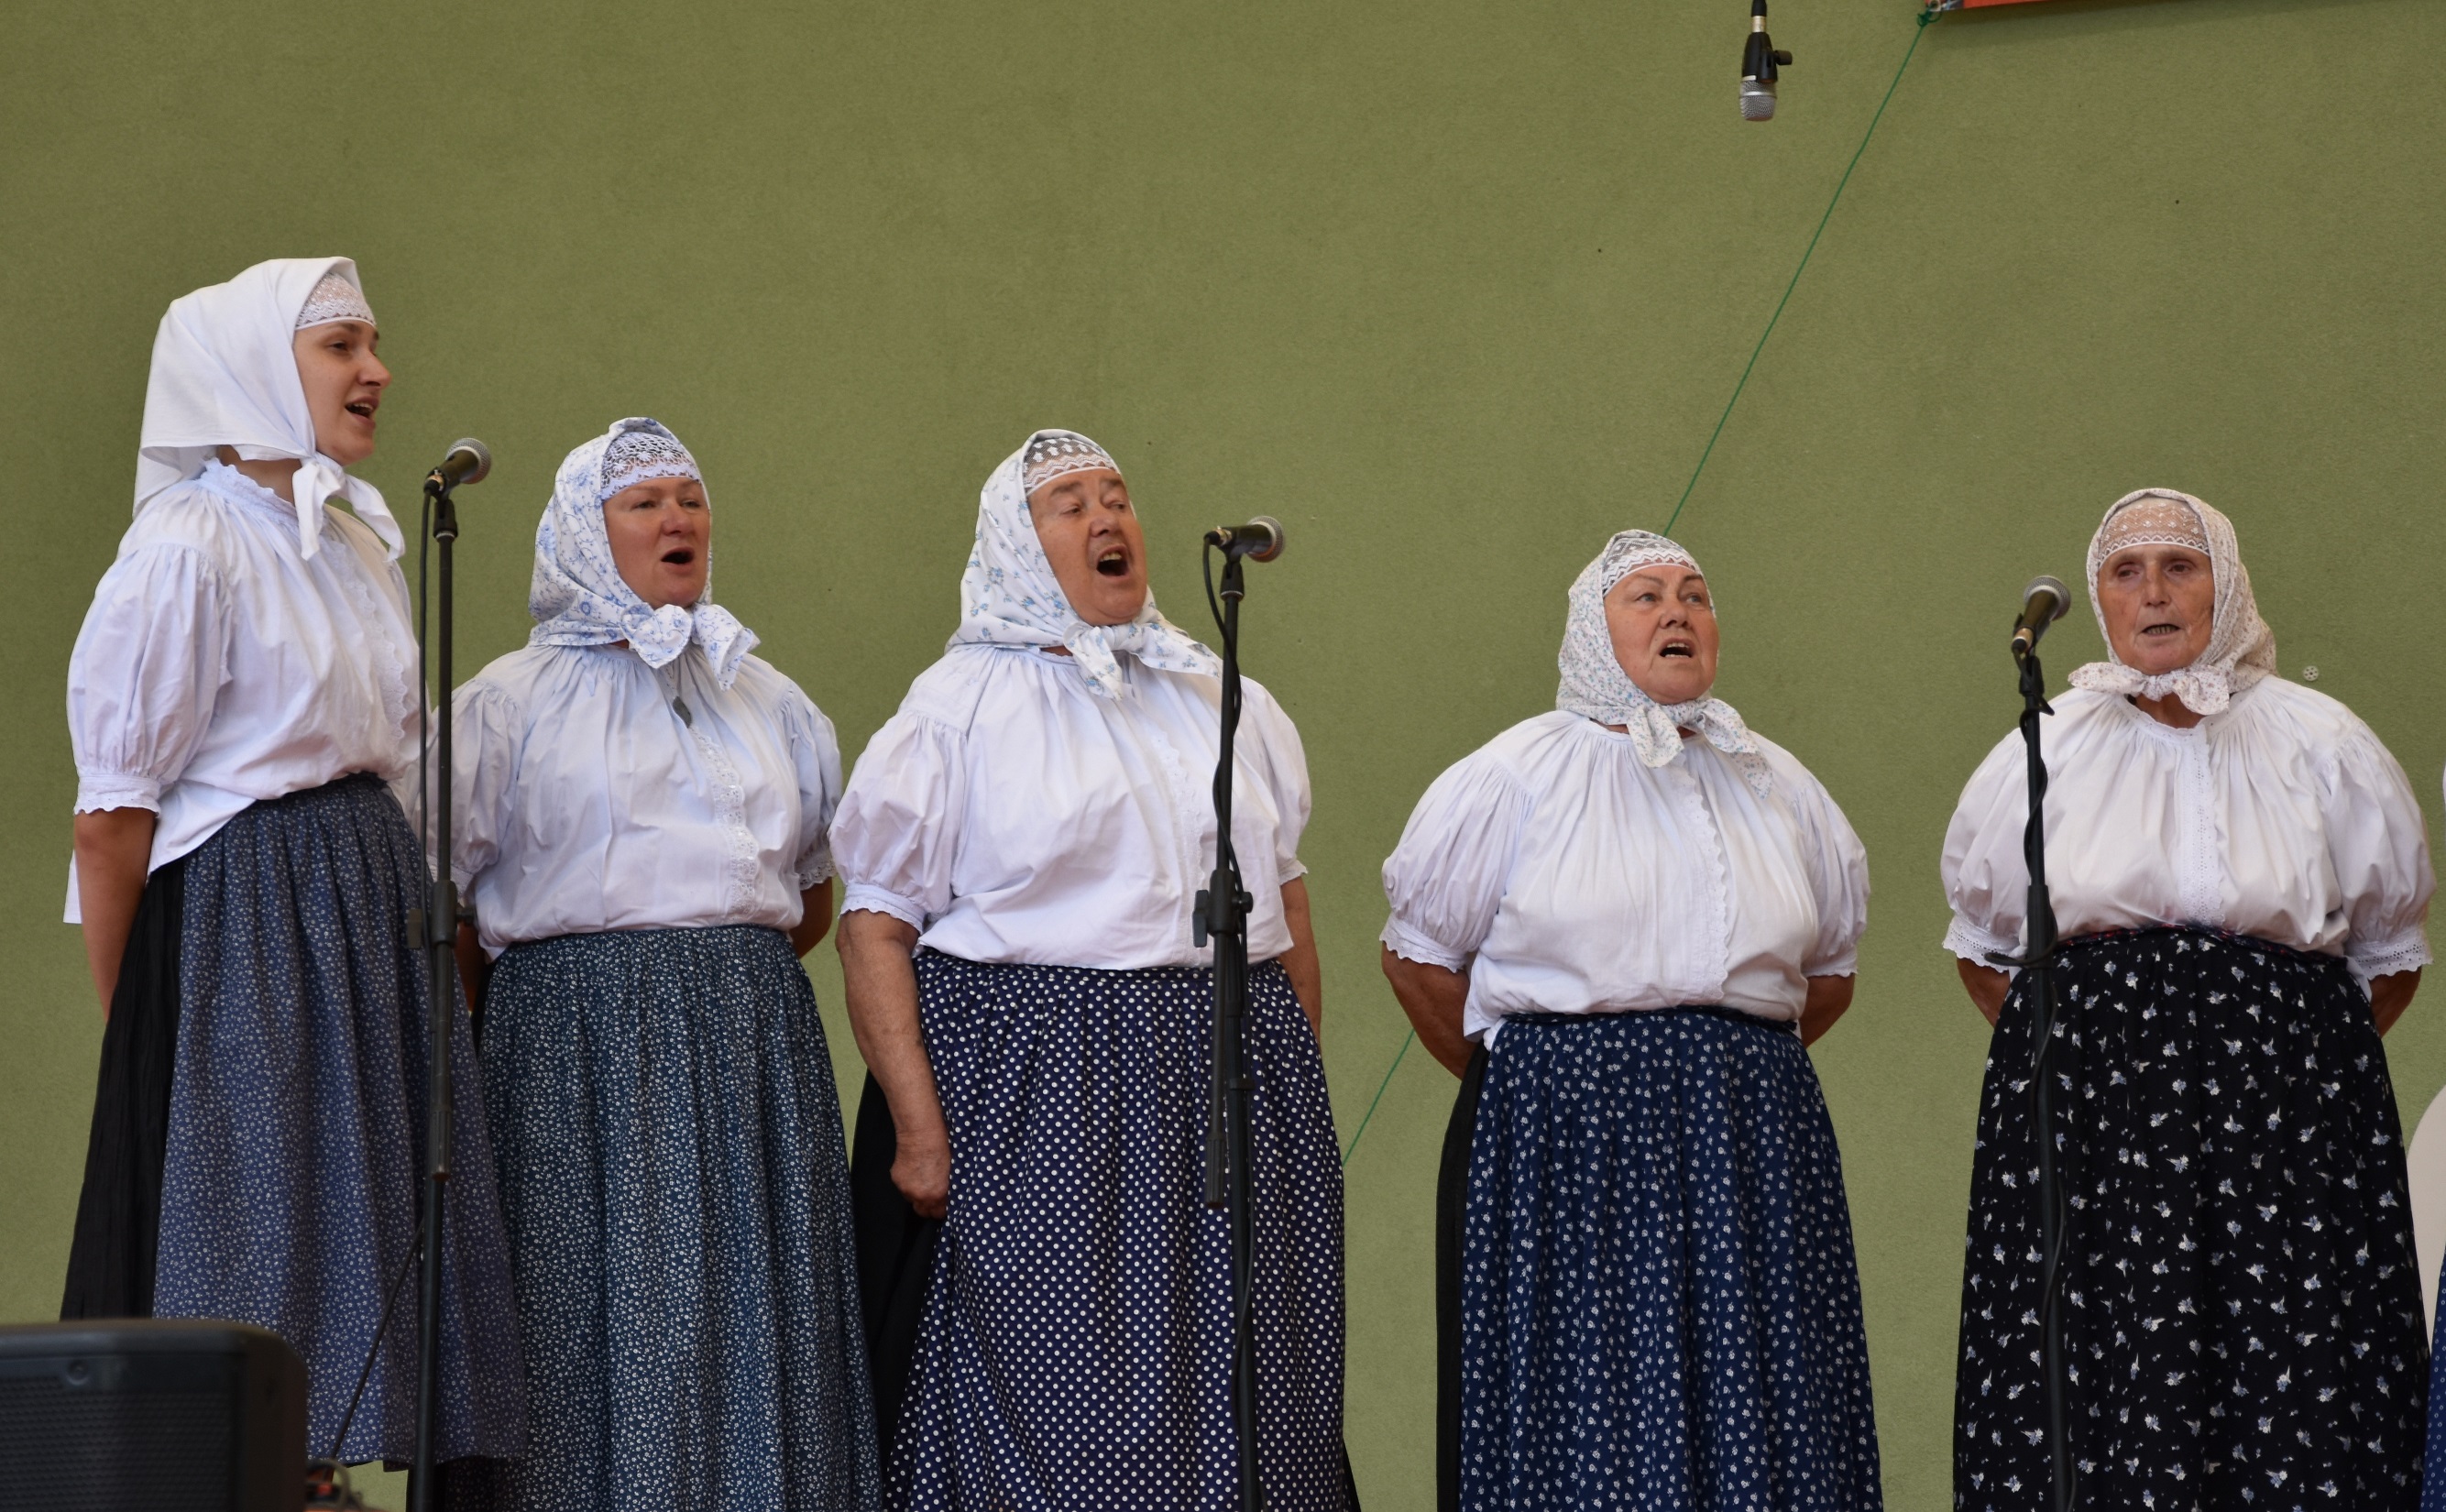 Strój góralek śląskich; zespół śpiewaczy Stejizbianki z Wisły na estradzie w Brennej. Fot. Maria Lipok-Bierwiaczonek, 2018